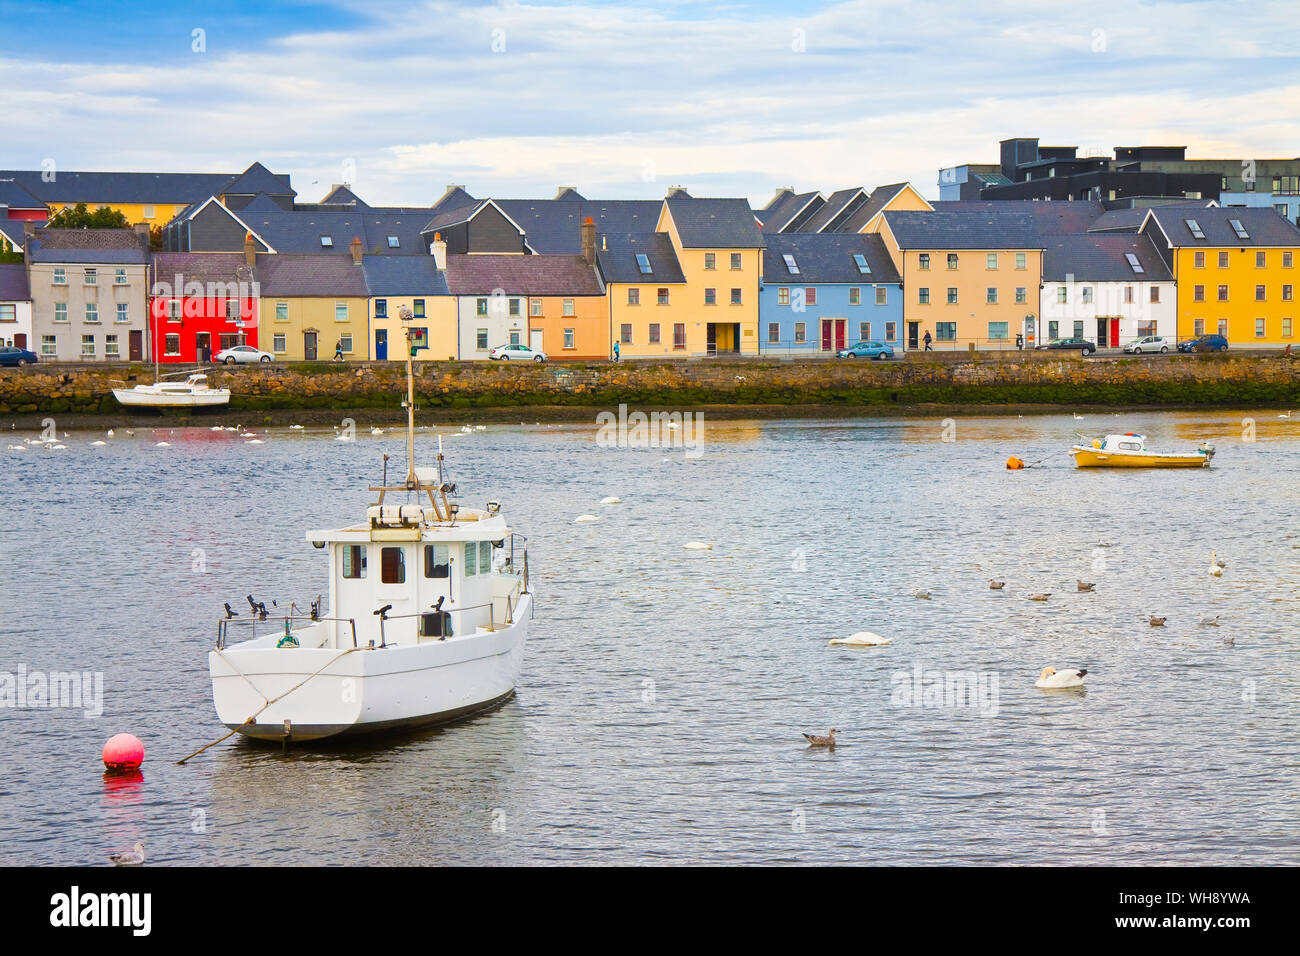 Paysage côtier irlandais avec les couleurs typiques maisons de pêcheurs avec des toits en pente (Galway - Irlande) Banque D'Images